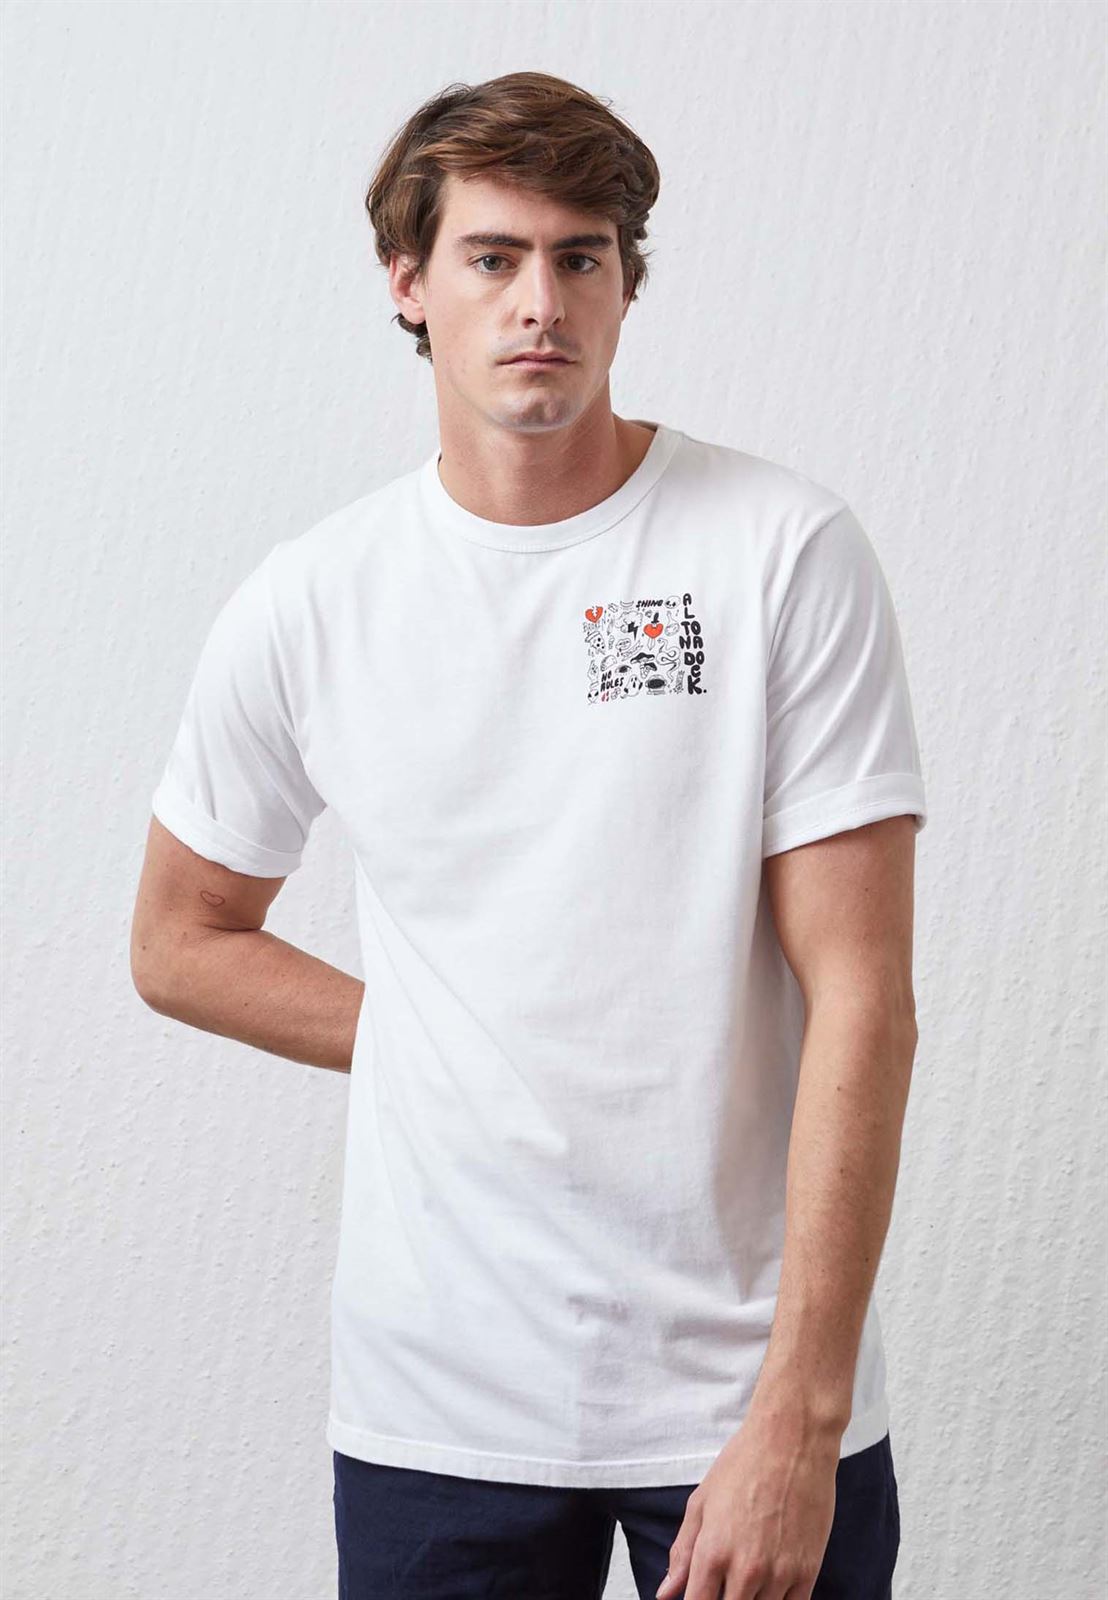 Camiseta Altonadock 105088 blanco - Imagen 1